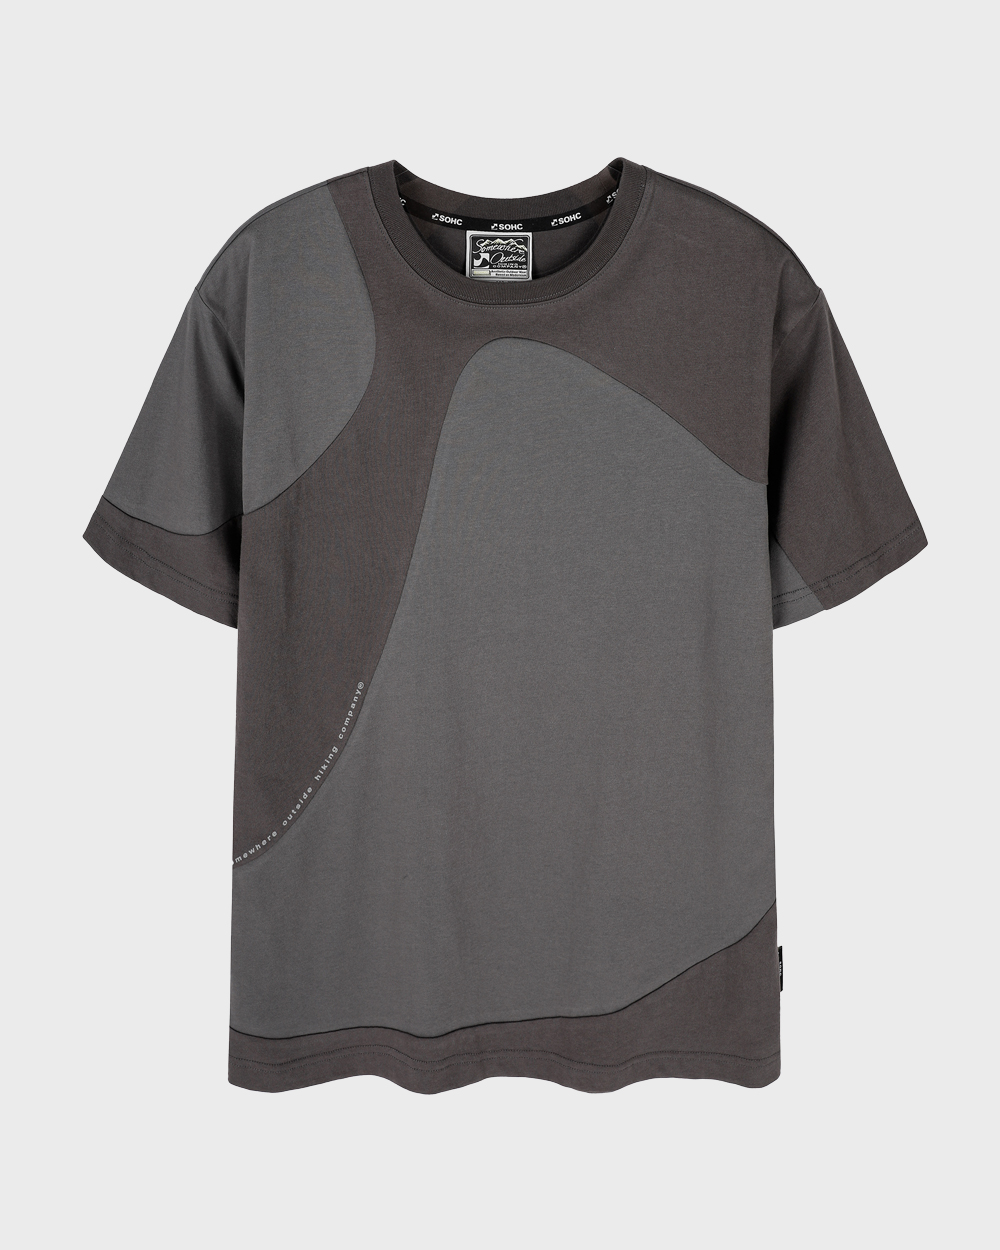 Symbol 2-Color T-Shirt (Charcoal)